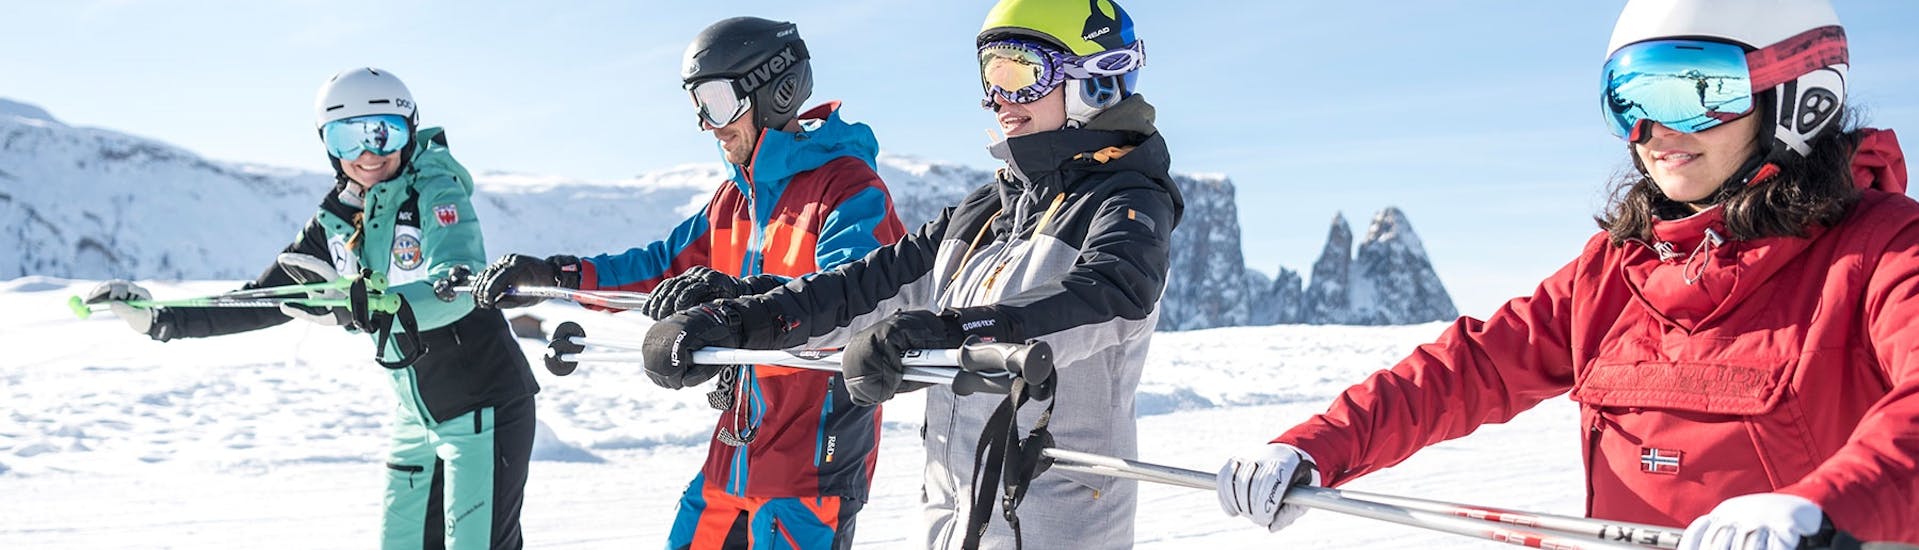 Volwassenen houden zich vast aan een stang tijdens de skilessen voor volwassenen voor alle niveaus met skischool Schlern 3000.